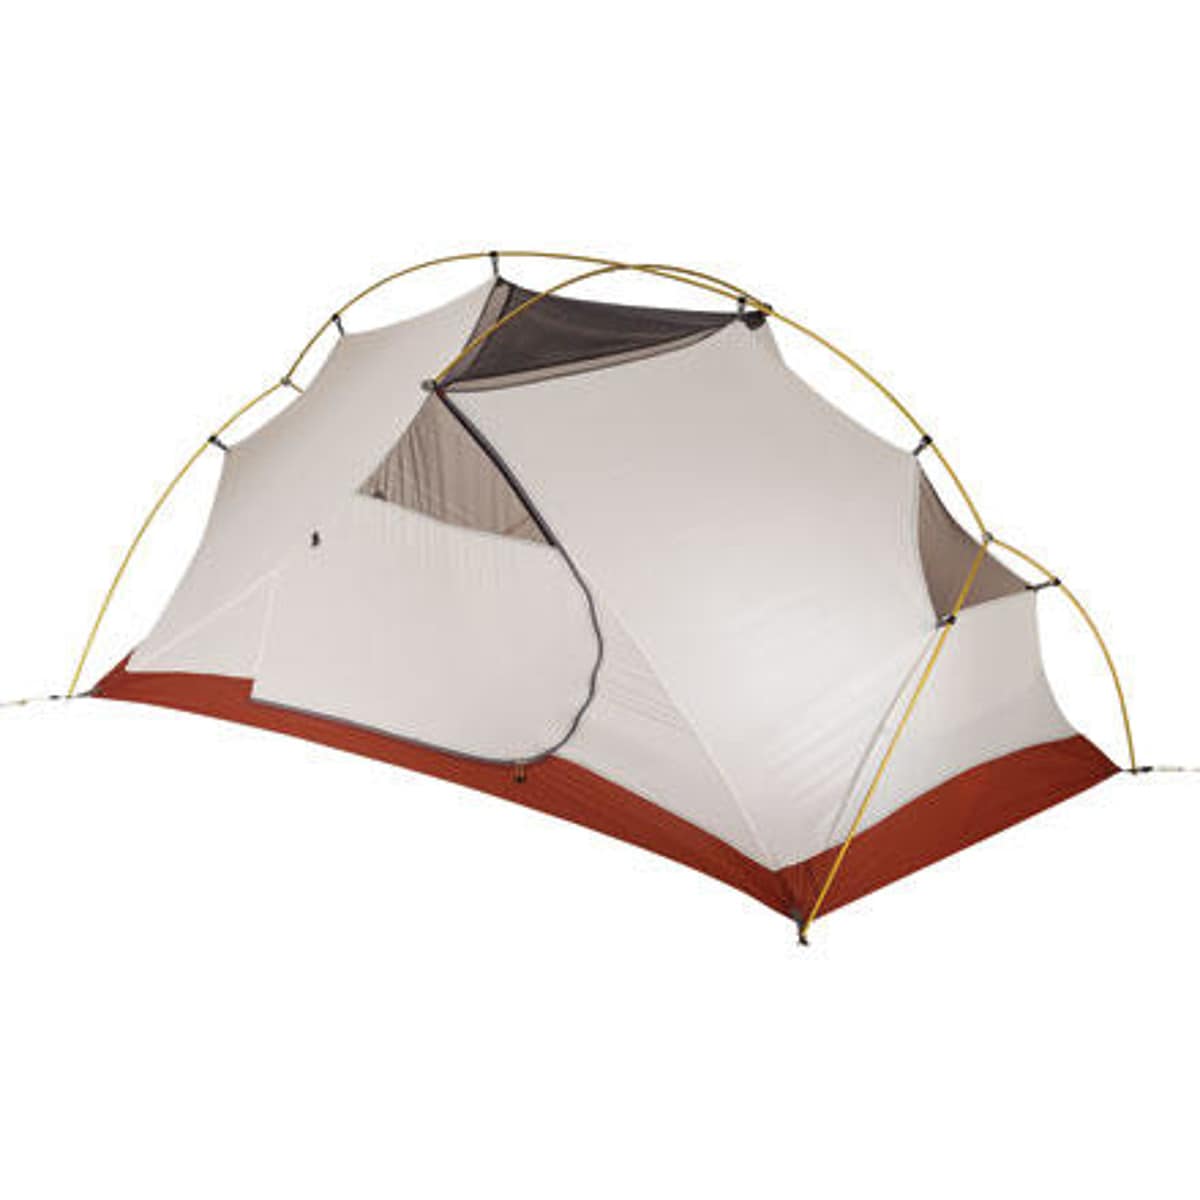 Beschaven Inademen melk wit MSR Hubba Hubba HP Tent 2-Person 3-Season - Hike & Camp